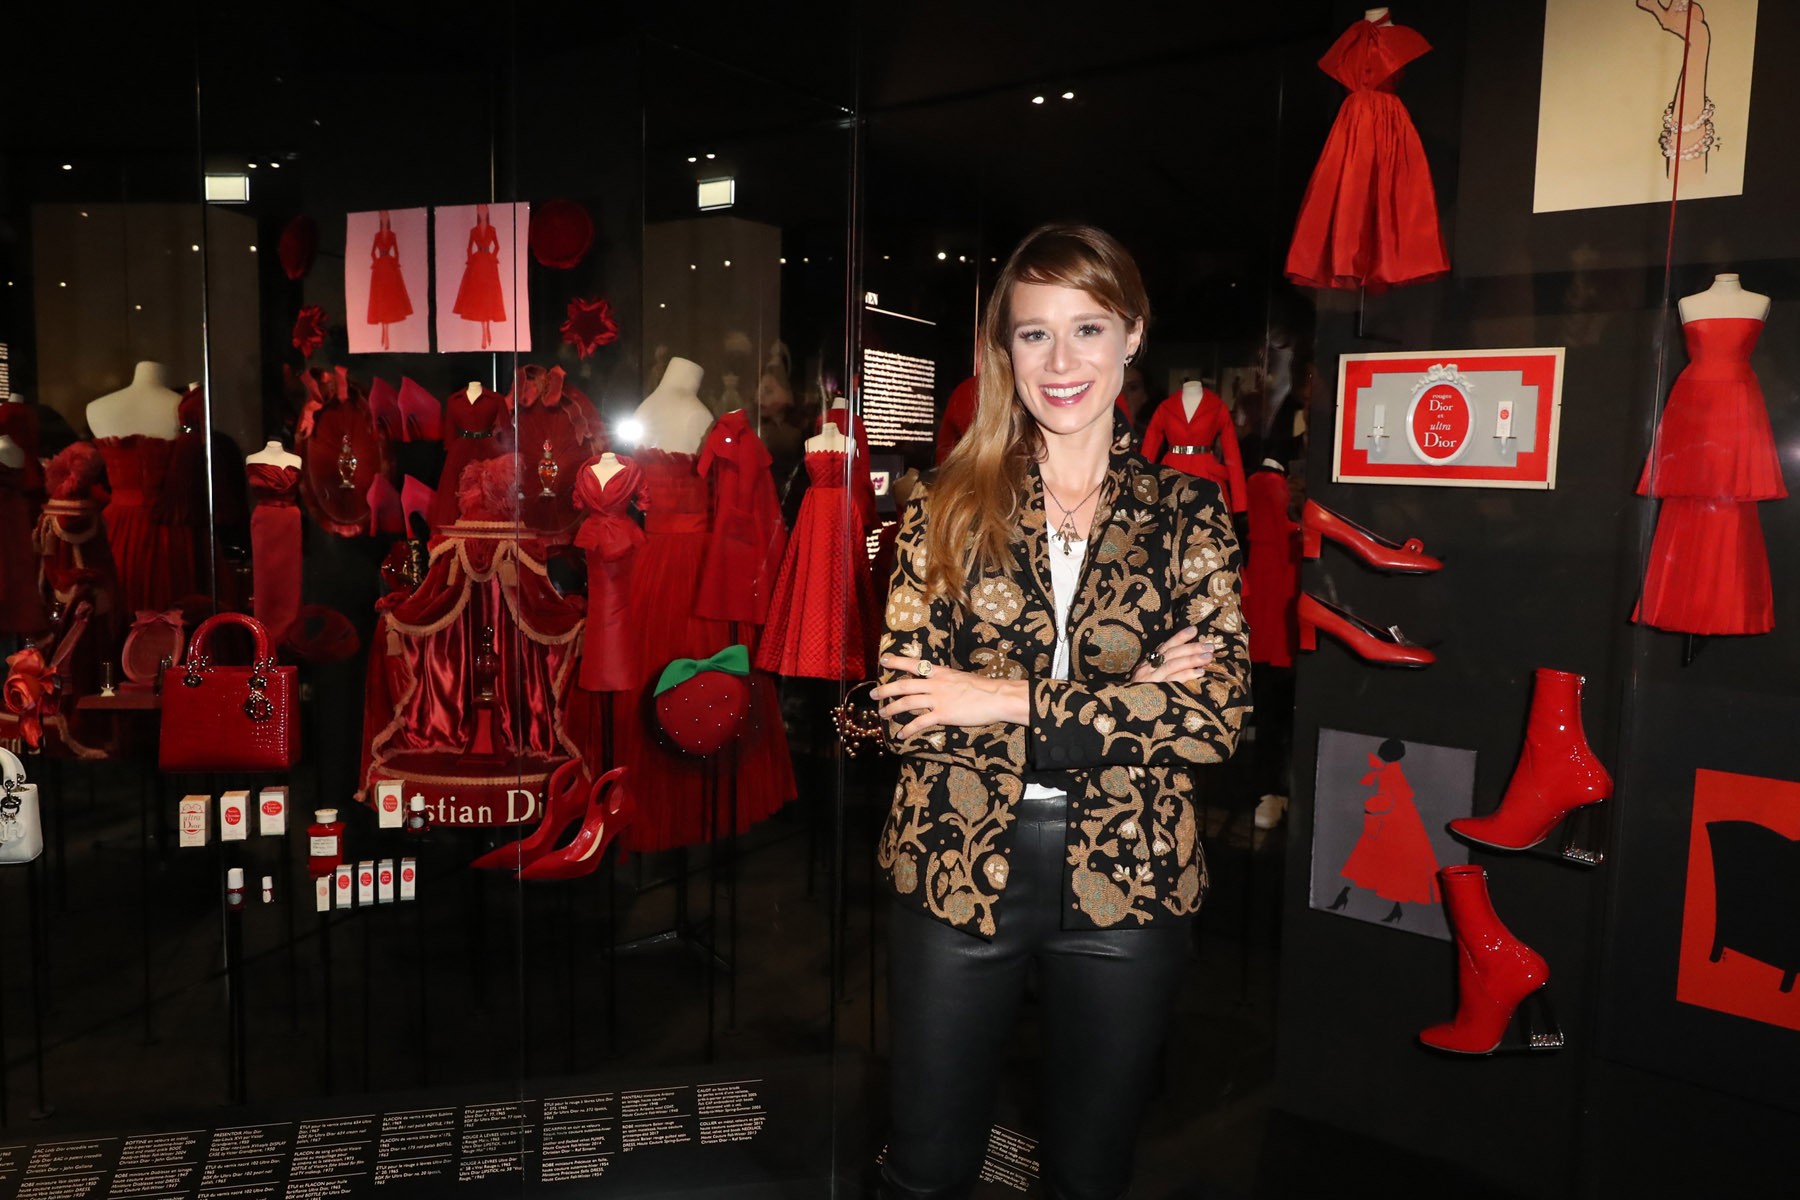 Mariana Ximenes se encanta com exposição comemorativa da Dior em Paris (Foto: Antonio Barros)